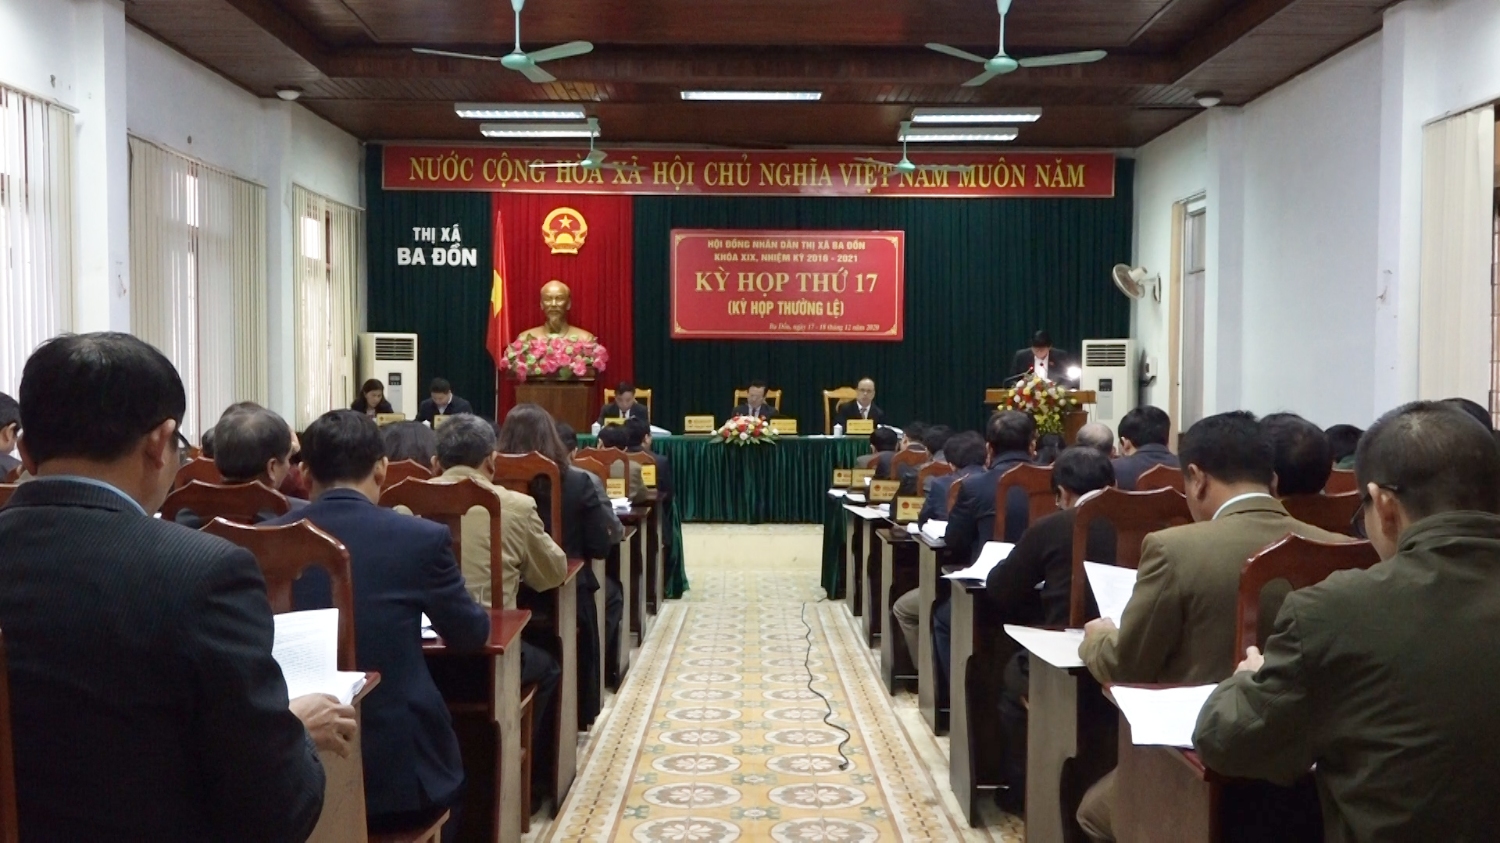 Toàn cảnh kỳ họp thứ 17, HĐND thị xã Ba Đồn khóa XIX